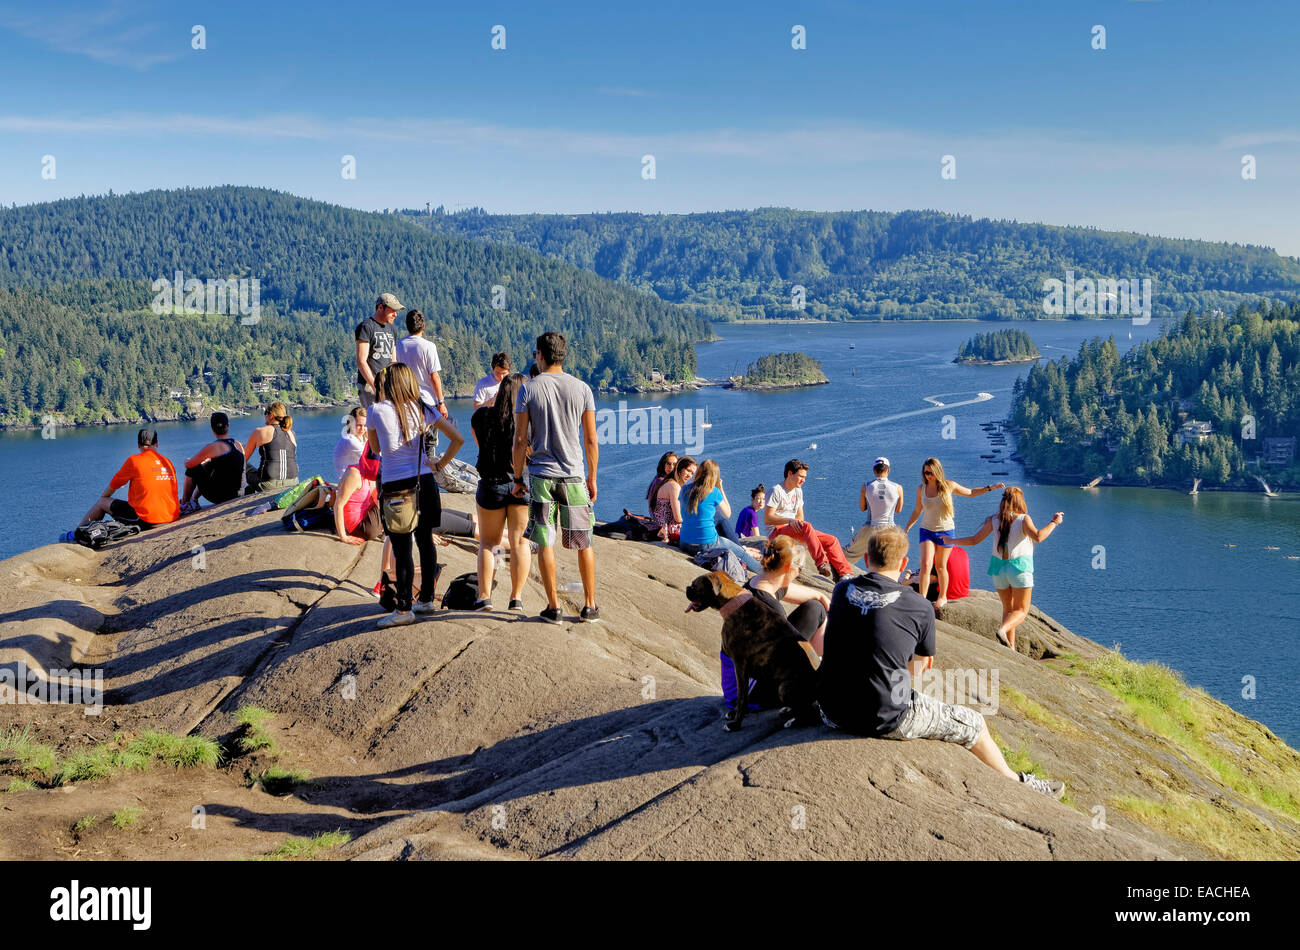 L'un des plus populaires destinations de randonnée dans la région de Vancouver est rocher surplombant la carrière de Deep Cove, District de North Vancouver Banque D'Images